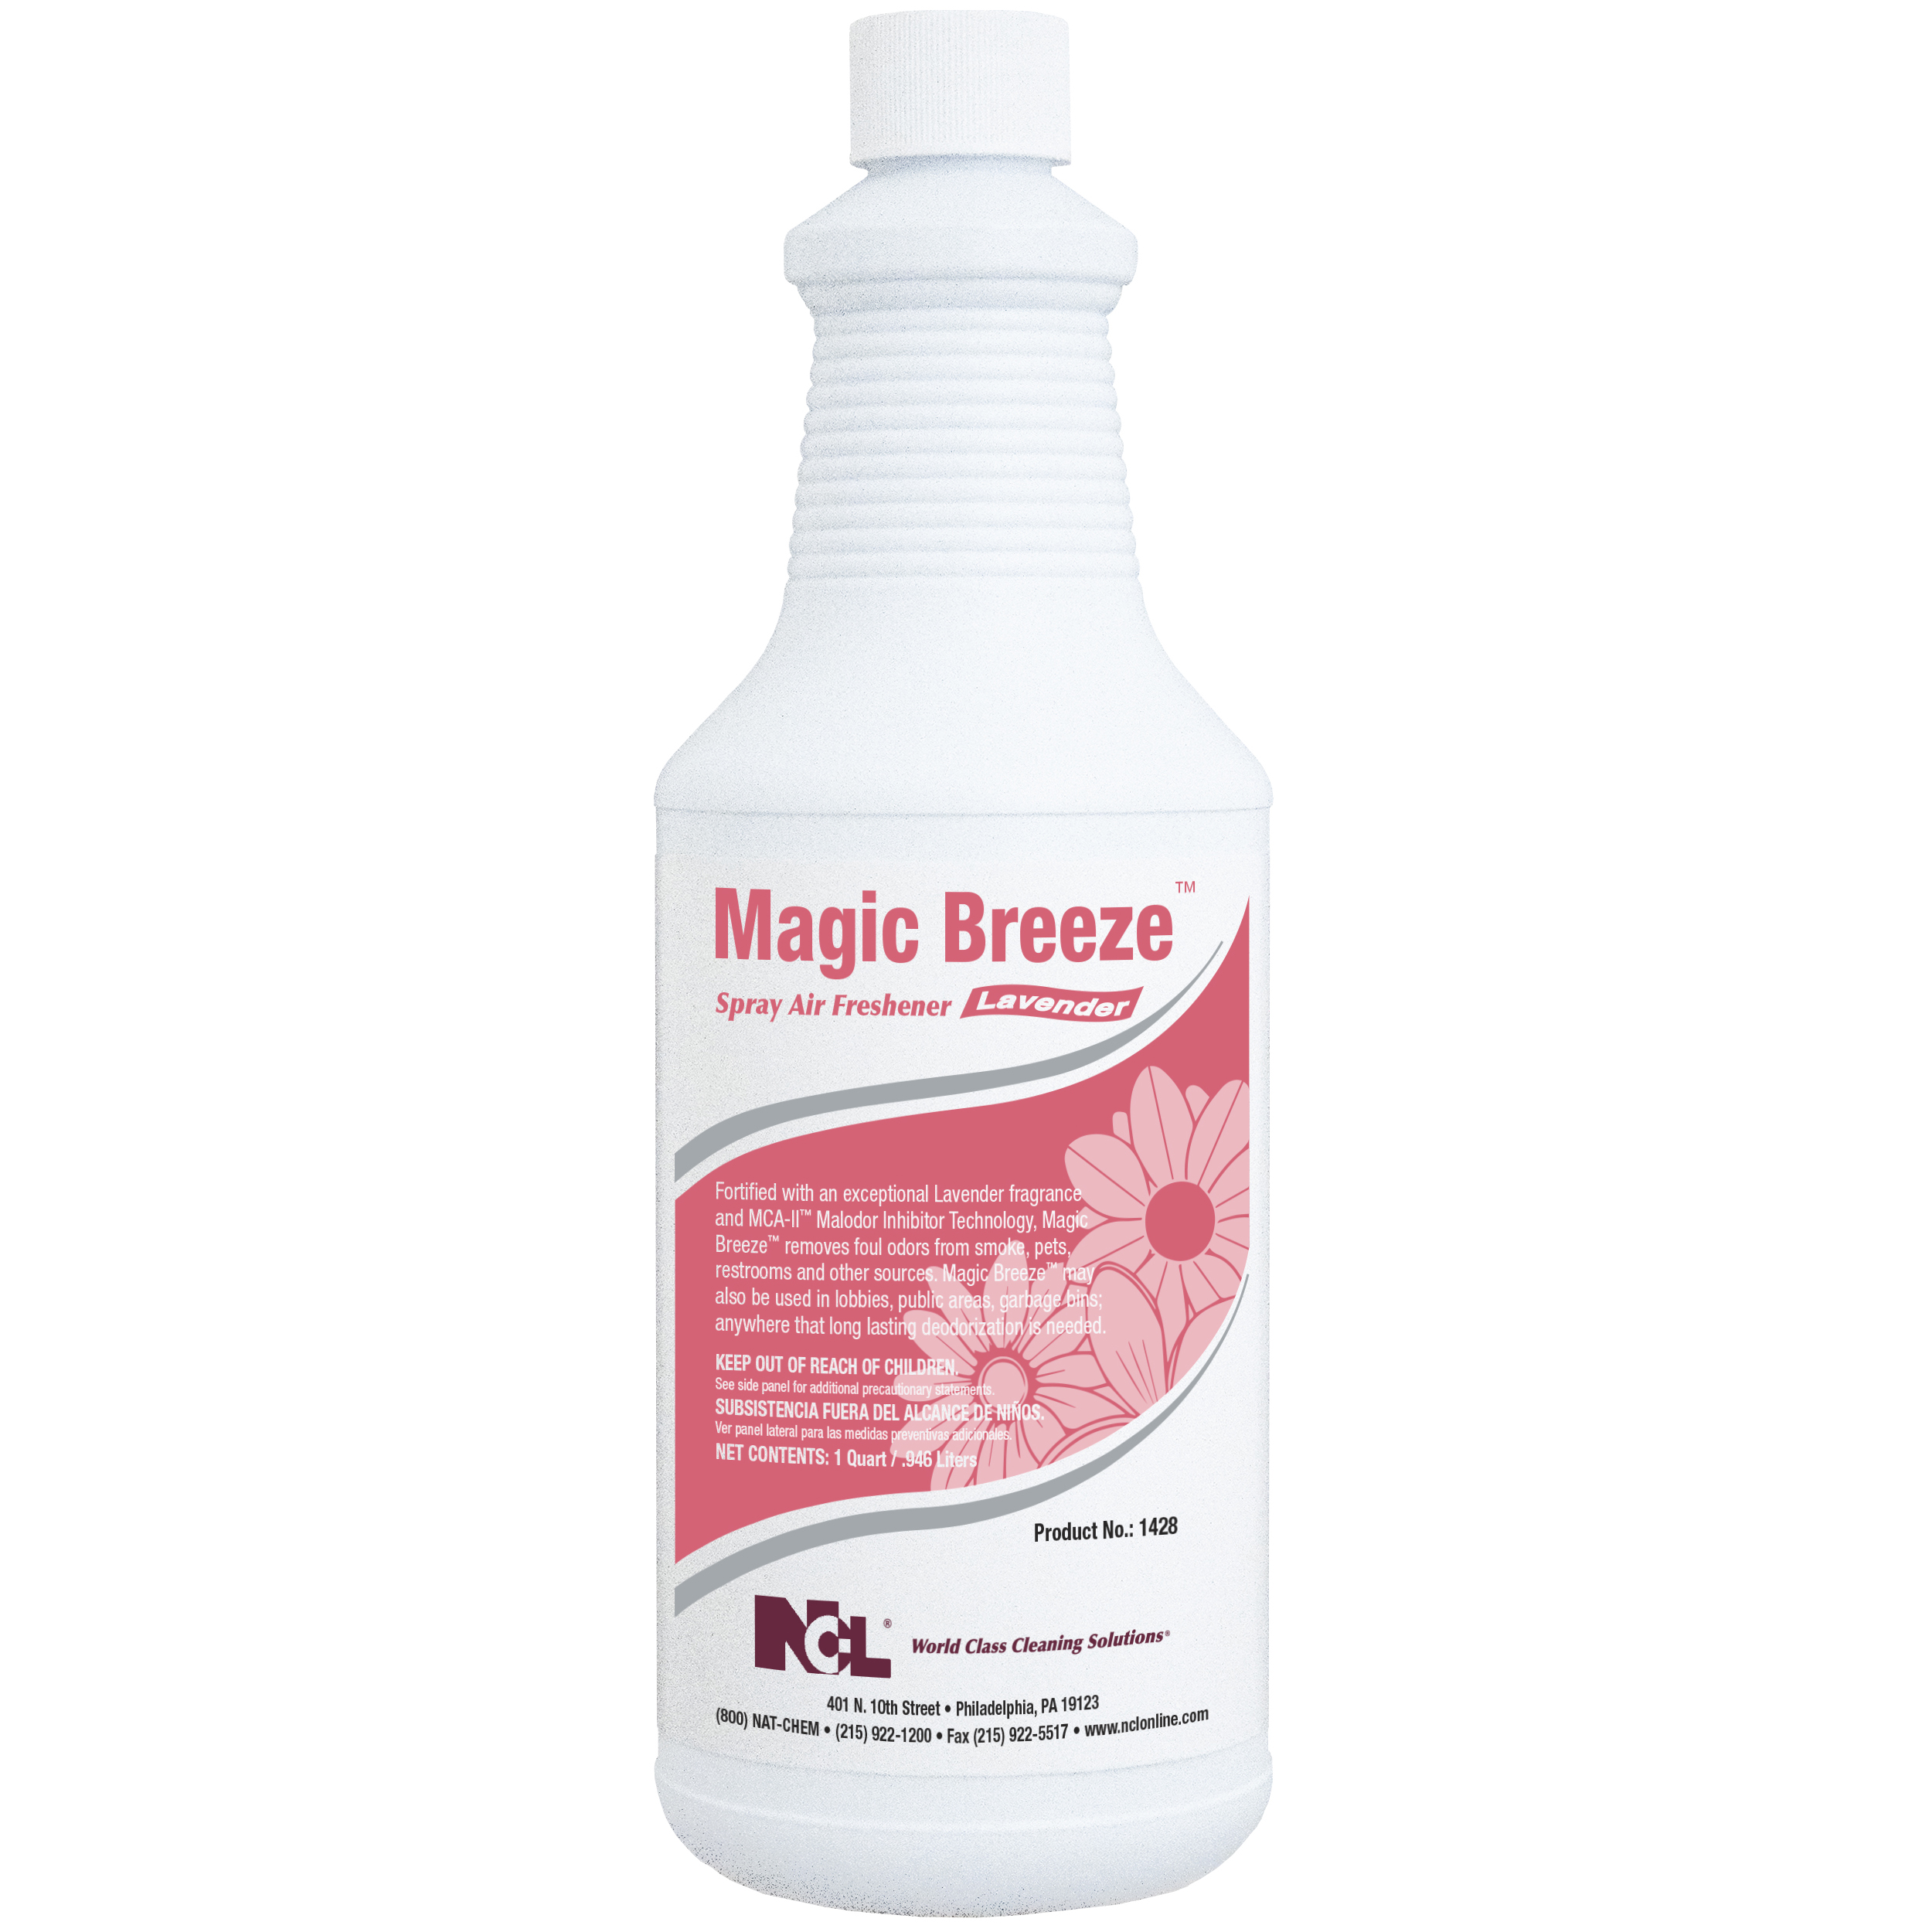  MAGIC BREEZE-LAVENDER Multi-Purpose Cleaner / Deodorizer 12/32 oz (1 Qt.) Case (NCL1428-36) 